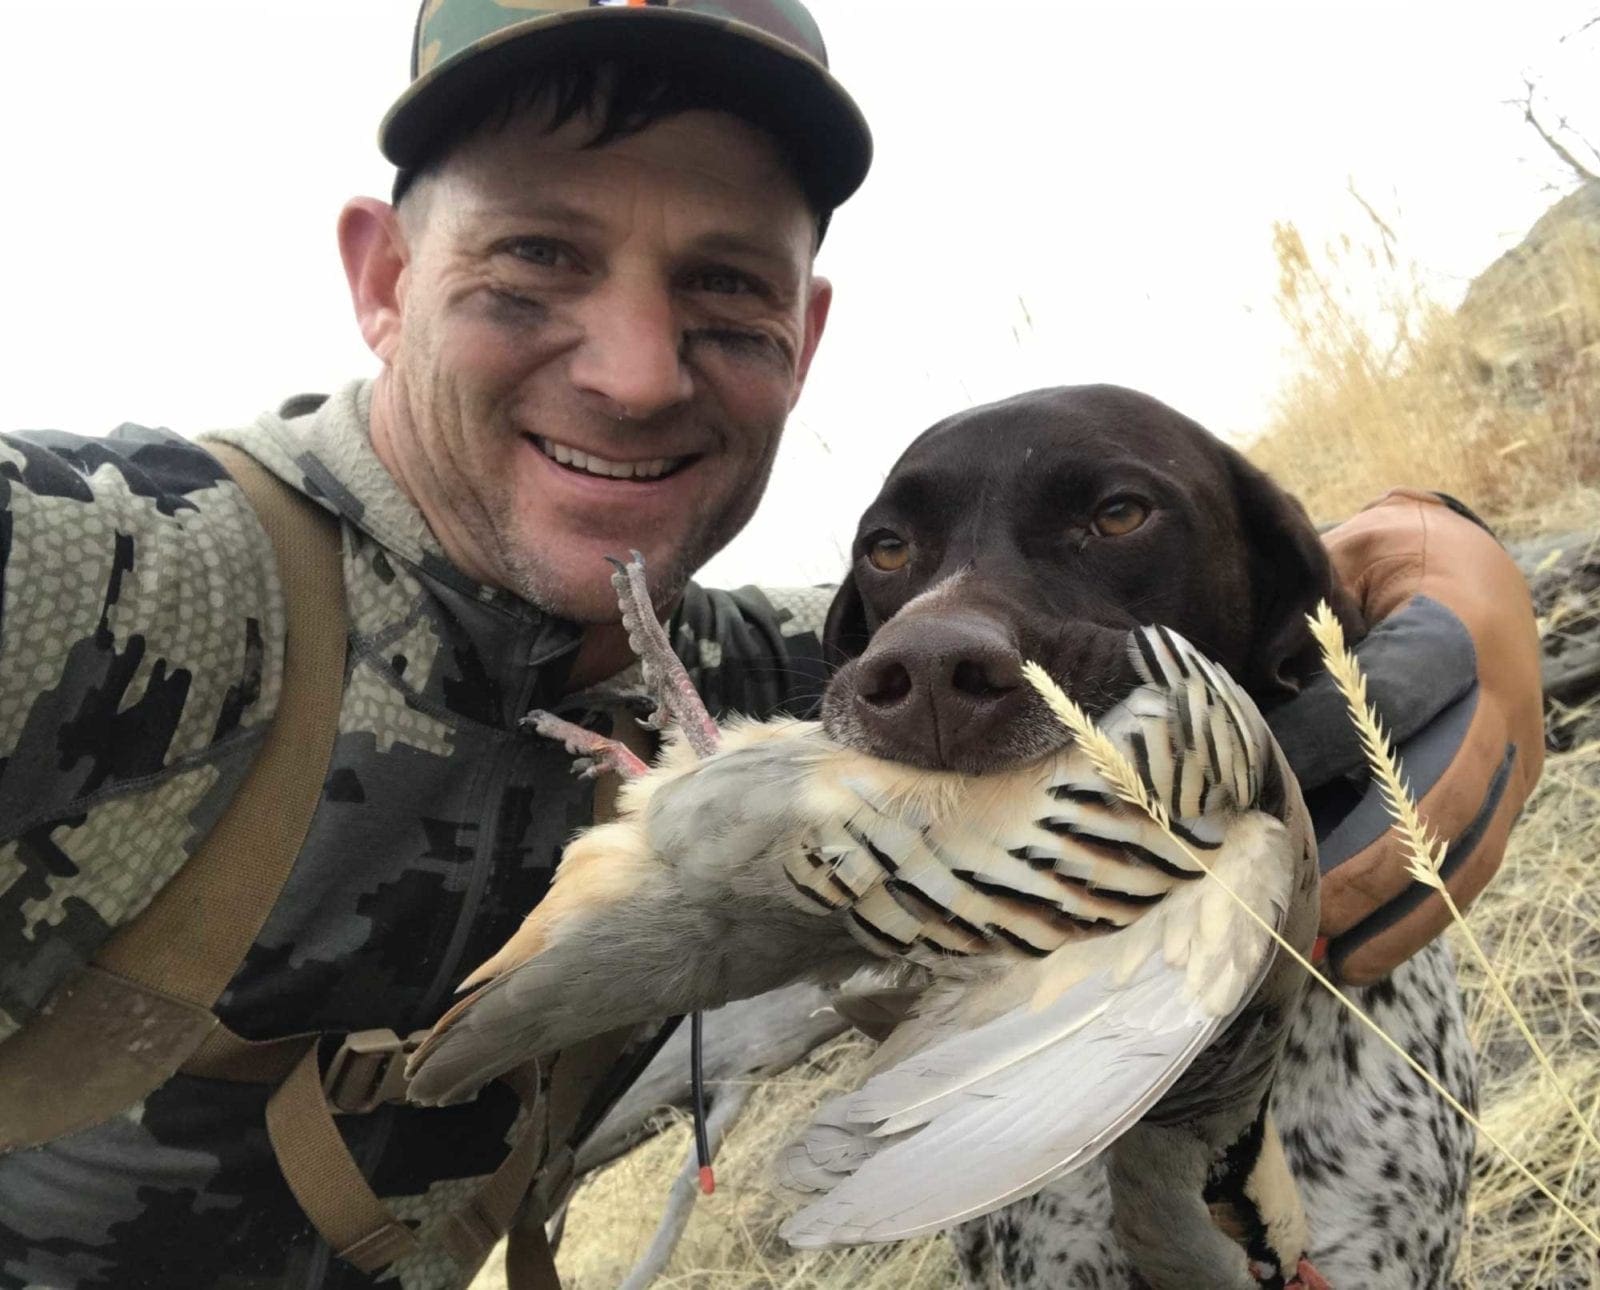 Derek Allen chukar hunting with his dog